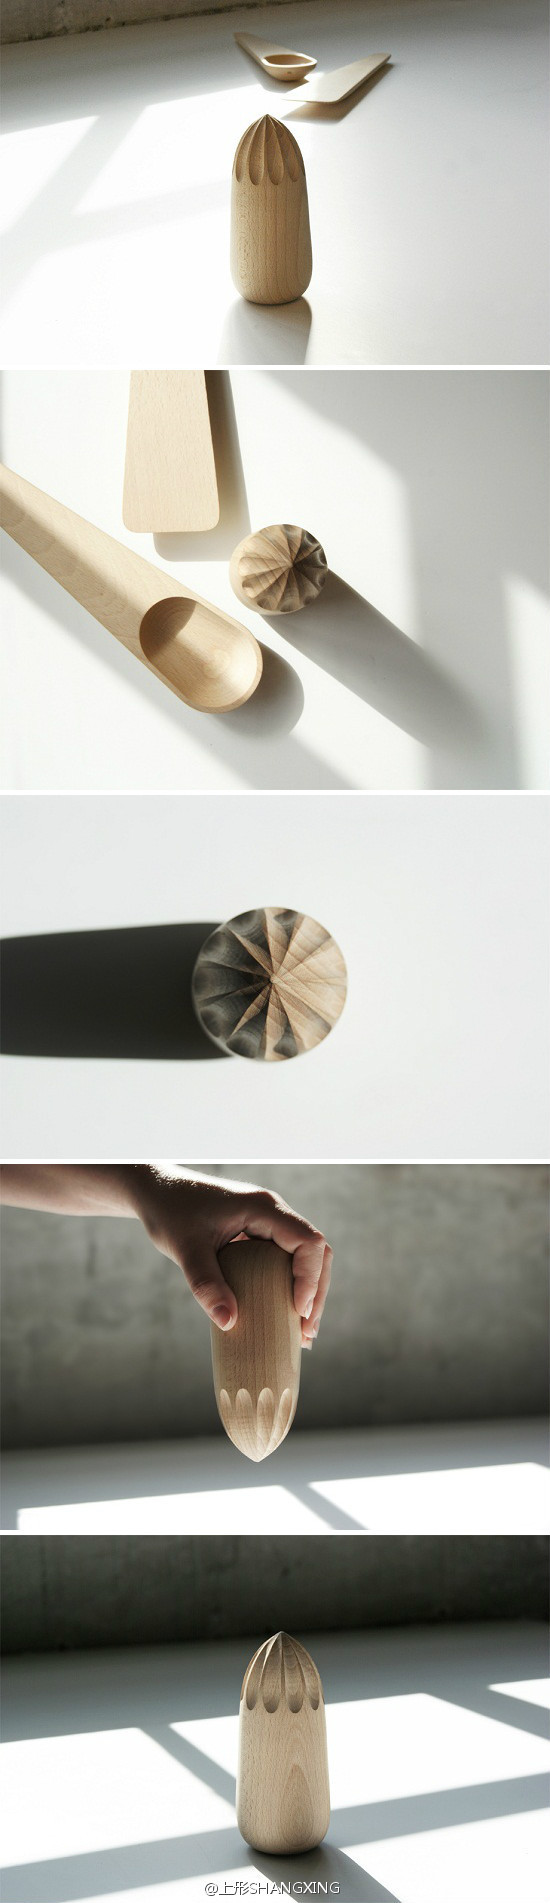 由丹麦设计工作室Kibisi 设计，Turn Around 是一款木制的手动榨汁器。借由普通的天然木料以朴拙的工艺制成，能经历长久的日常使用而更添魅力，深具简约质朴的设计精神。欢迎关注「山形」SHANXING微博：http://weibo.com/shangxingfurniture